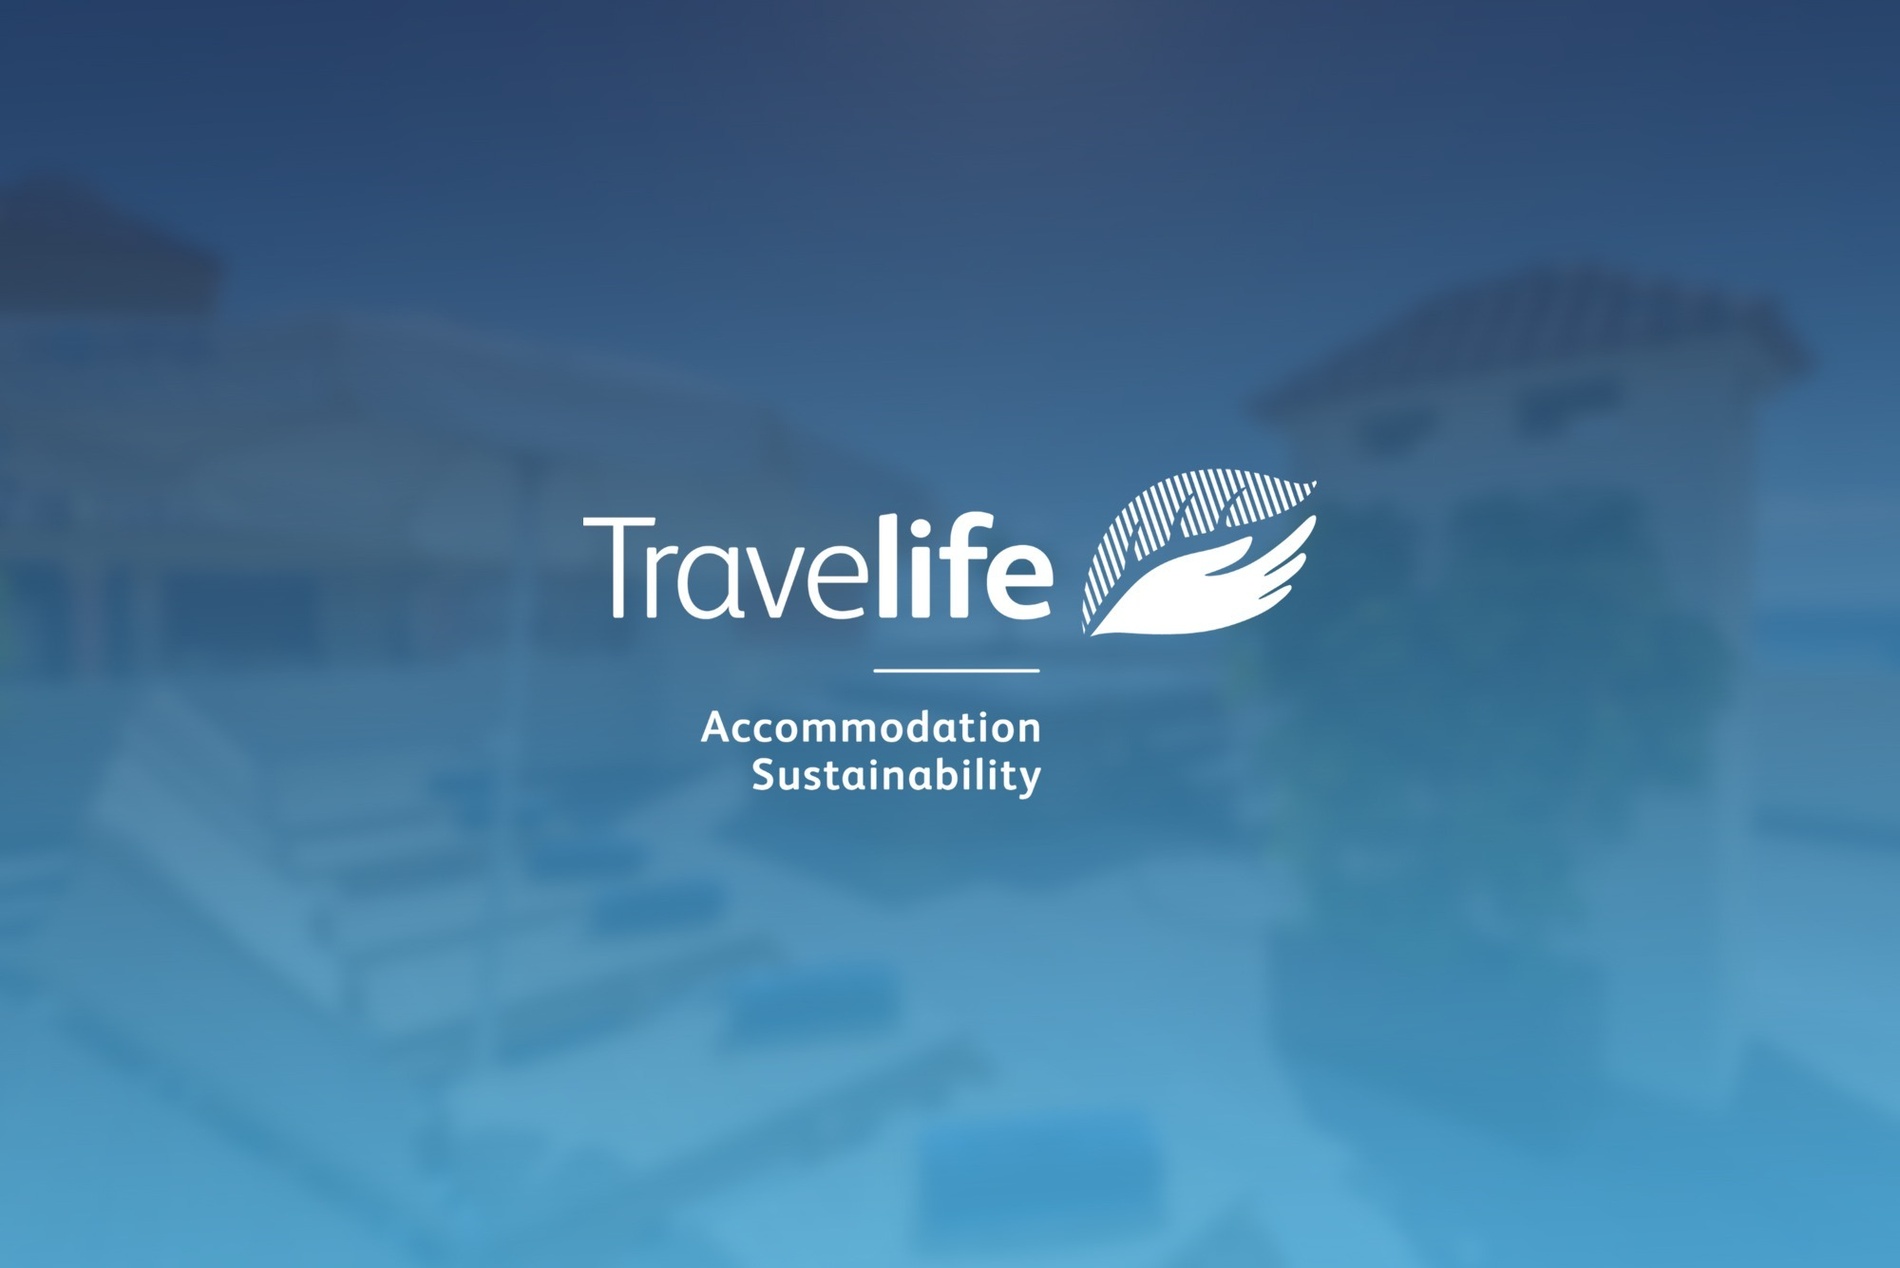 le logo de la compagnie aérienne travellife est affiché sur un fond bleu